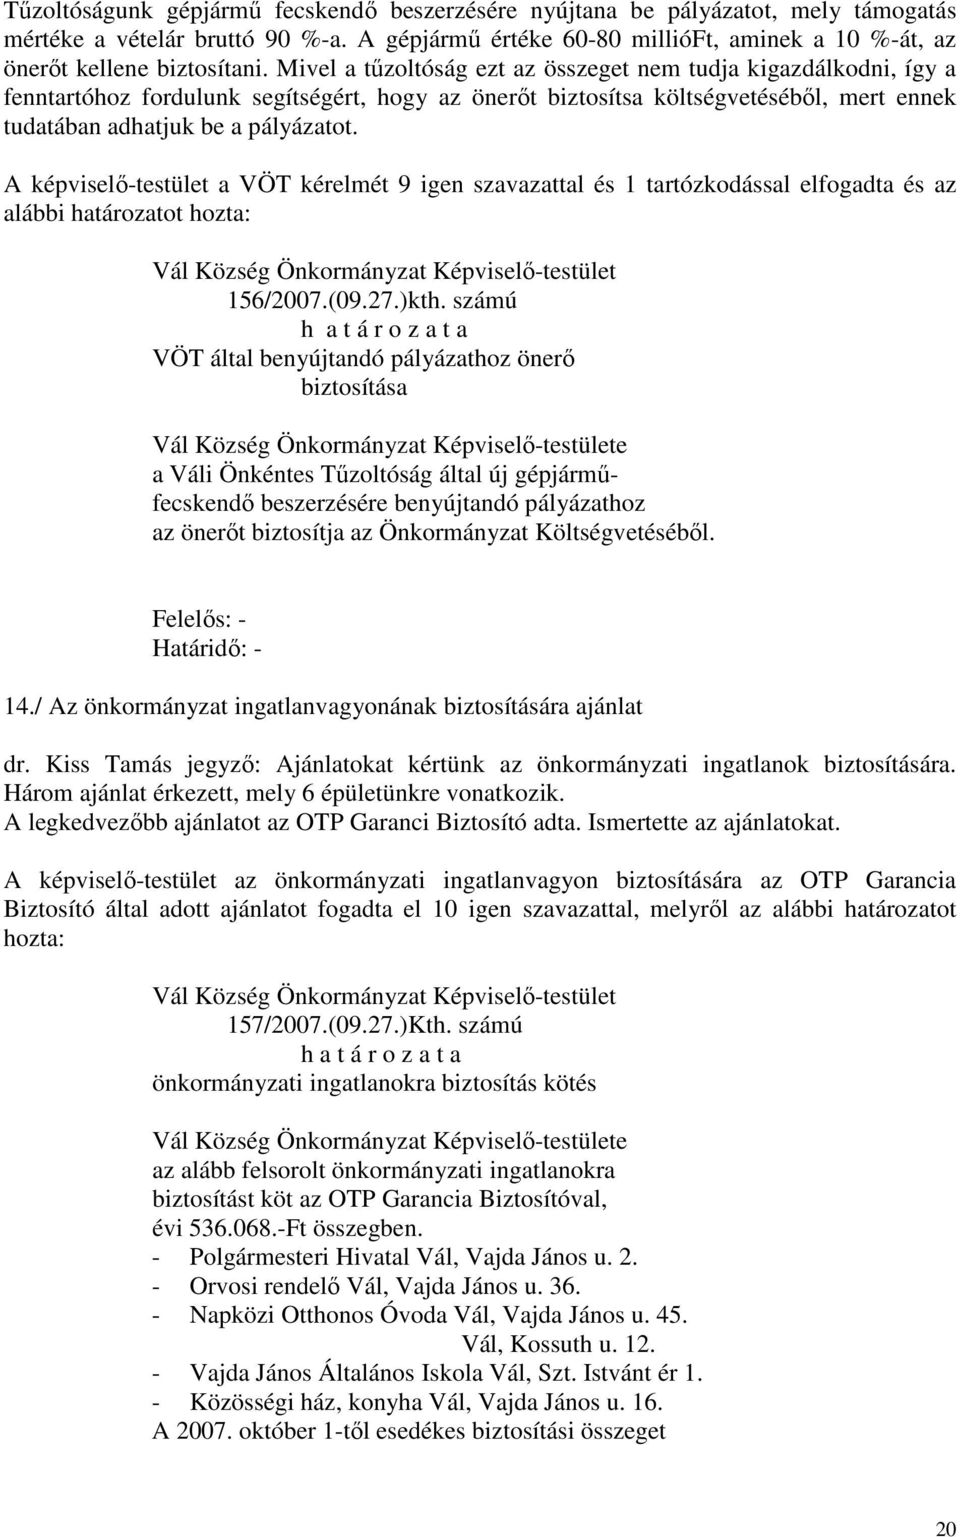 A képviselő-testület a VÖT kérelmét 9 igen szavazattal és 1 tartózkodással elfogadta és az alábbi határozatot hozta: 156/2007.(09.27.)kth.